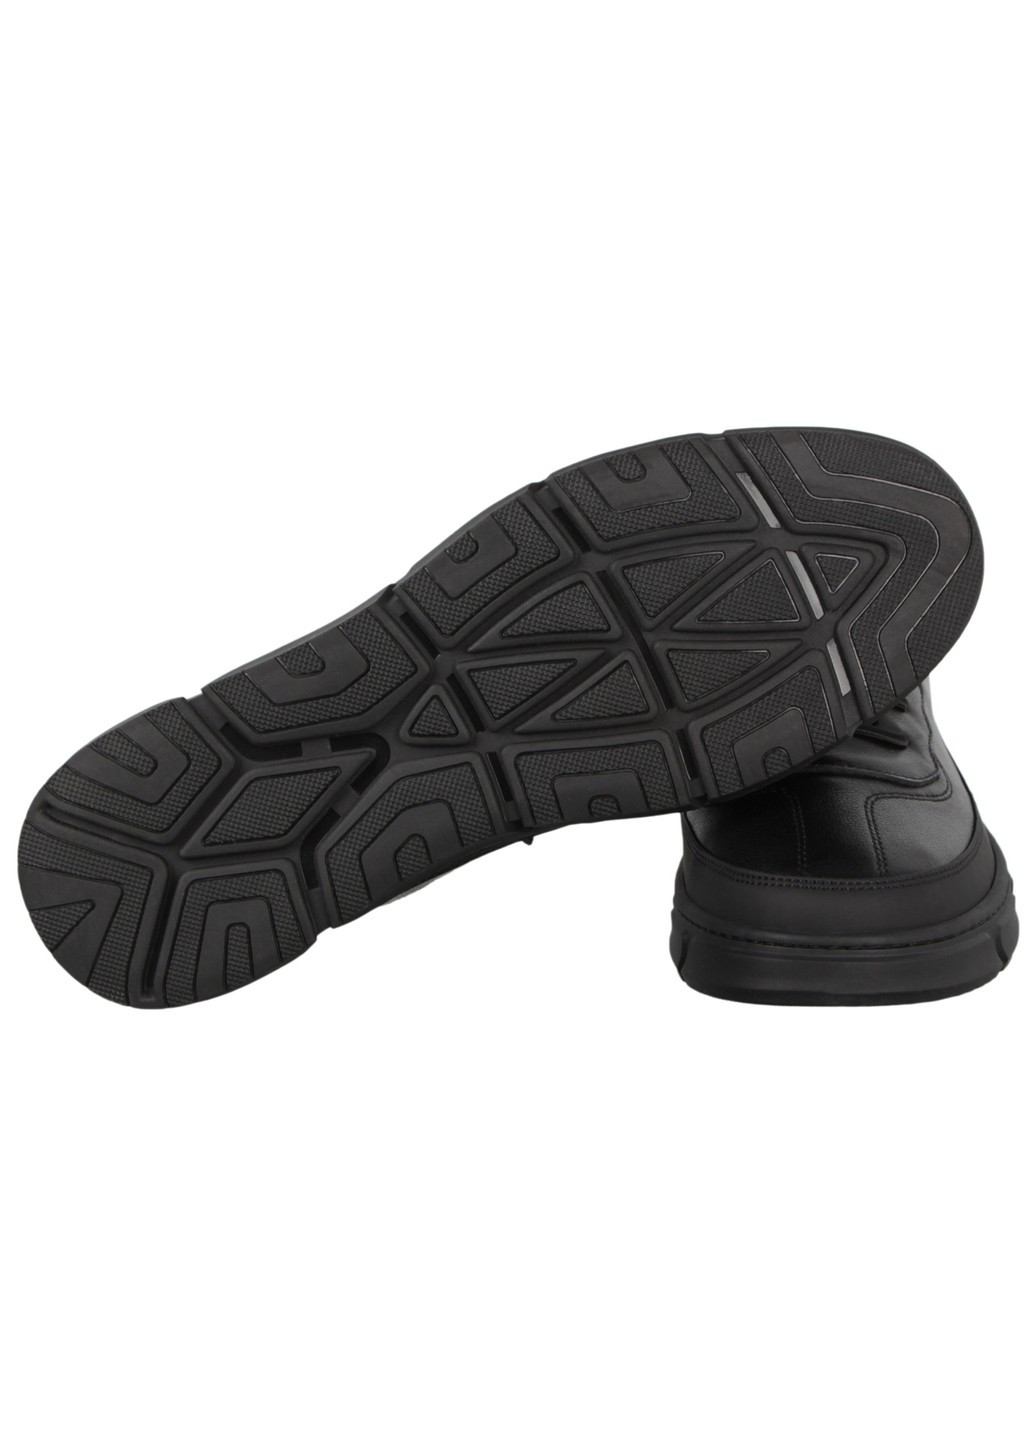 Черные демисезонные мужские кроссовки 198035 Cosottinni